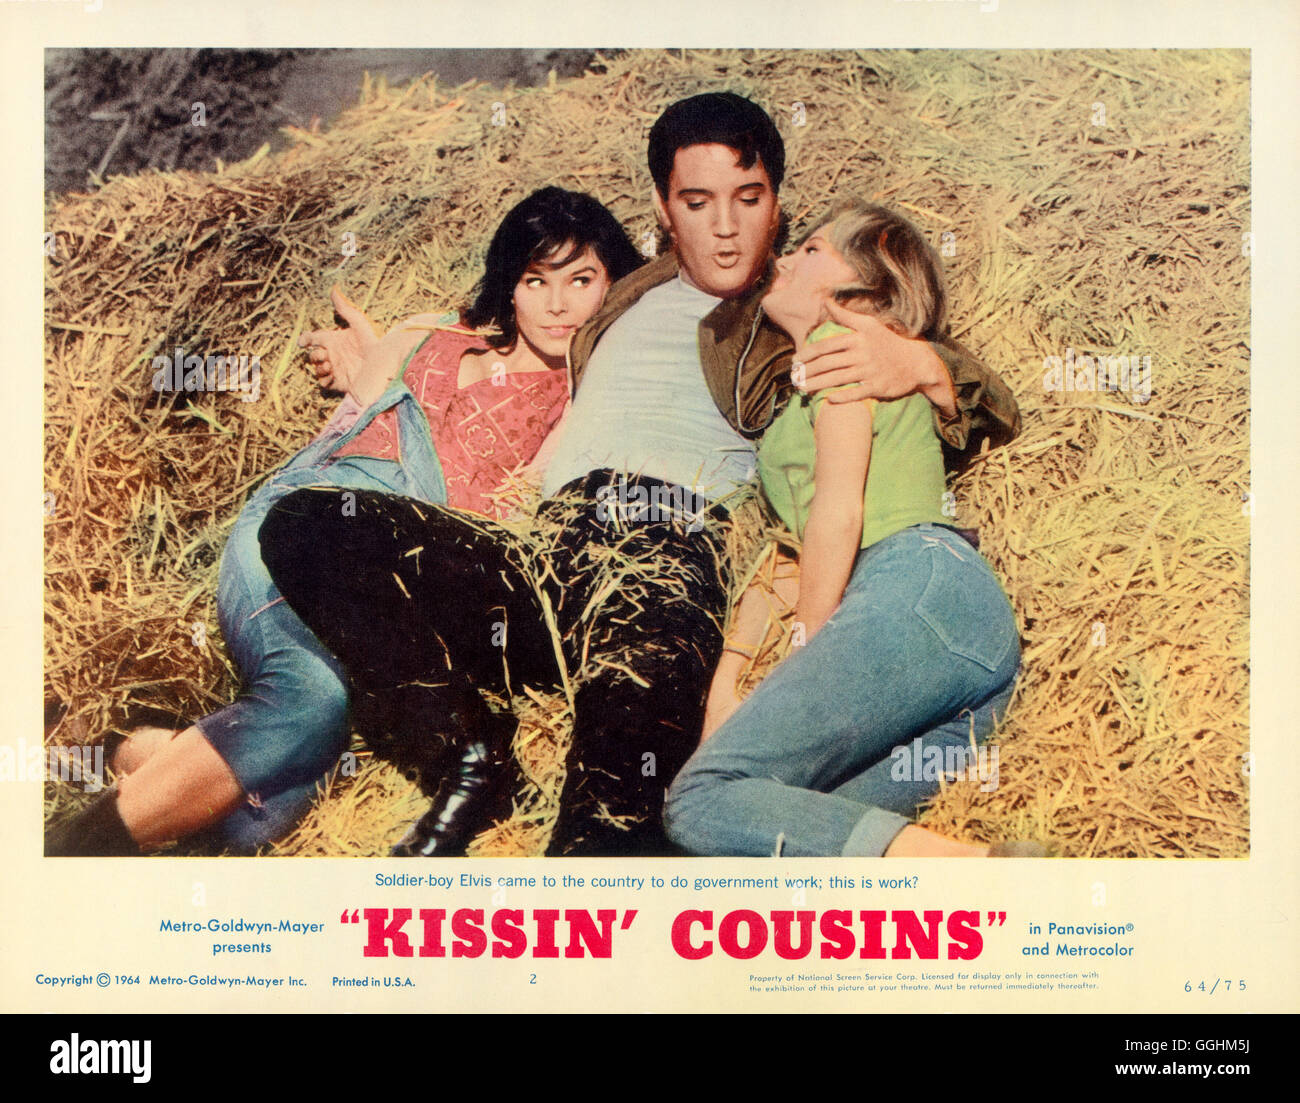 die-wilden-weiber-von-tennessee-kissing-cousins-usa-1964-gene-nelson-GGHM5J.jpg